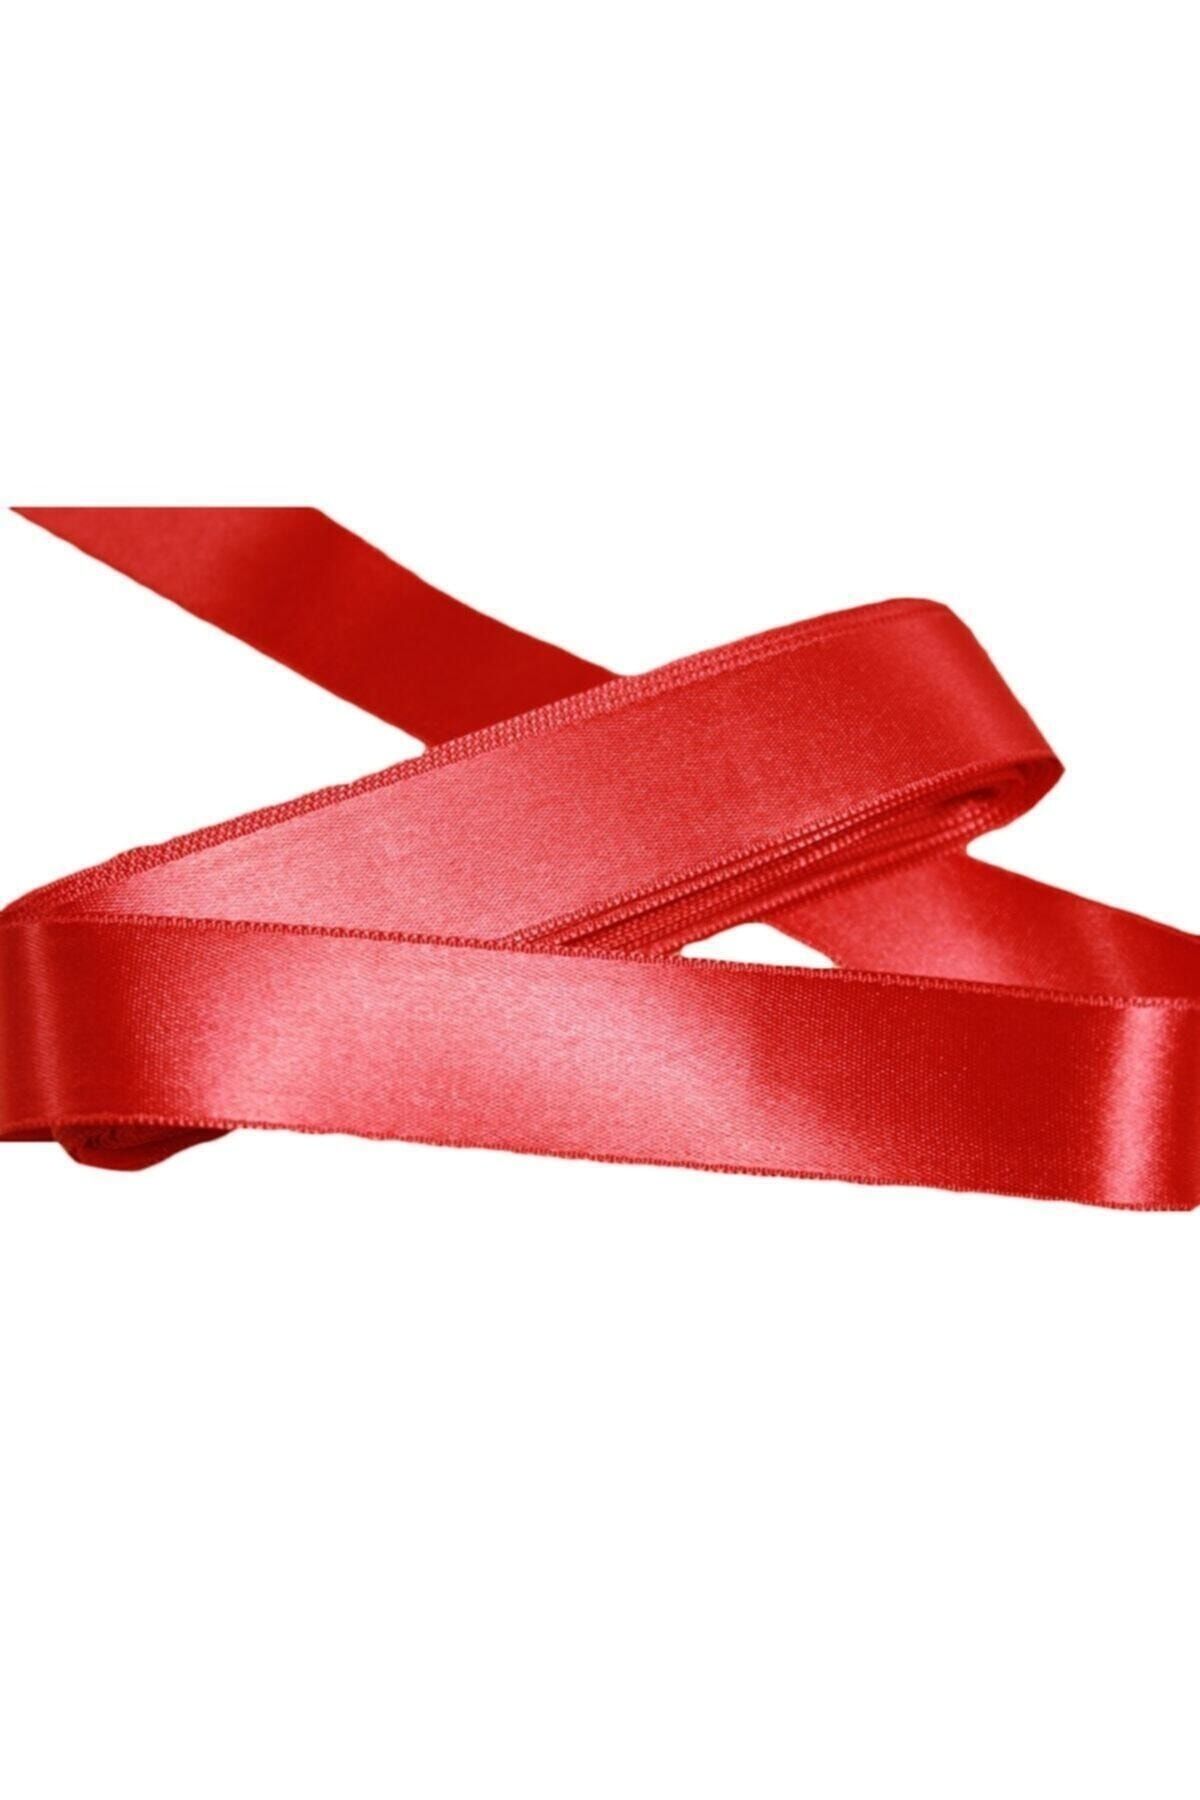 Aker Hediyelik Kırmızı Saten Kurdele Şerit – 3cm 5 Metre Saten Kurdele